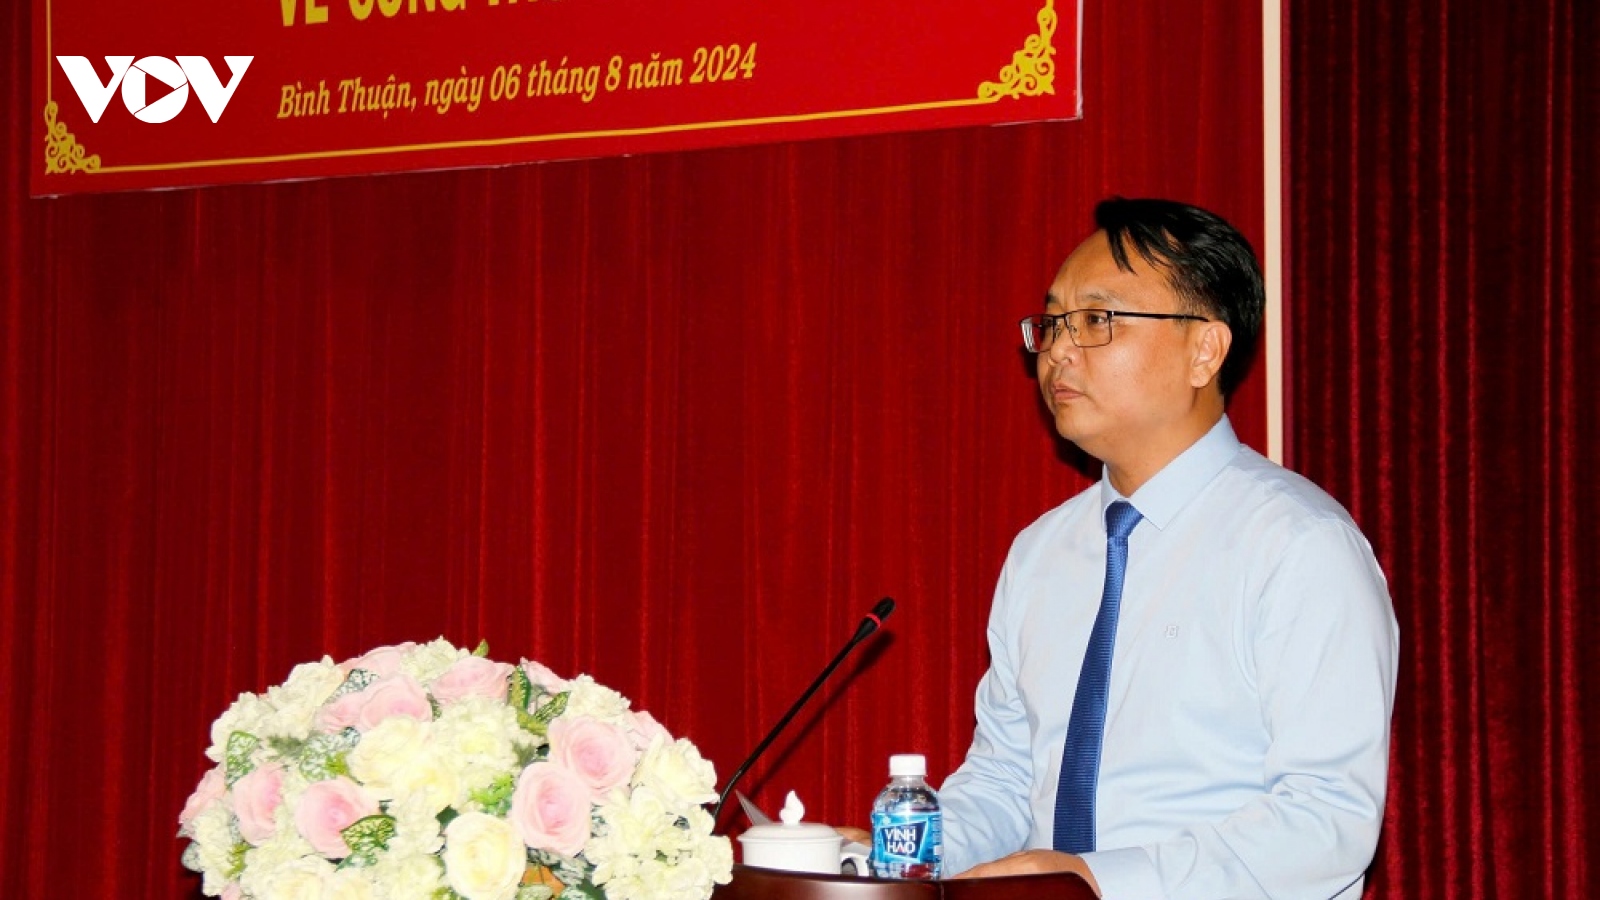 Ông Đặng Hồng Sỹ làm Phó Bí thư Tỉnh ủy Bình Thuận